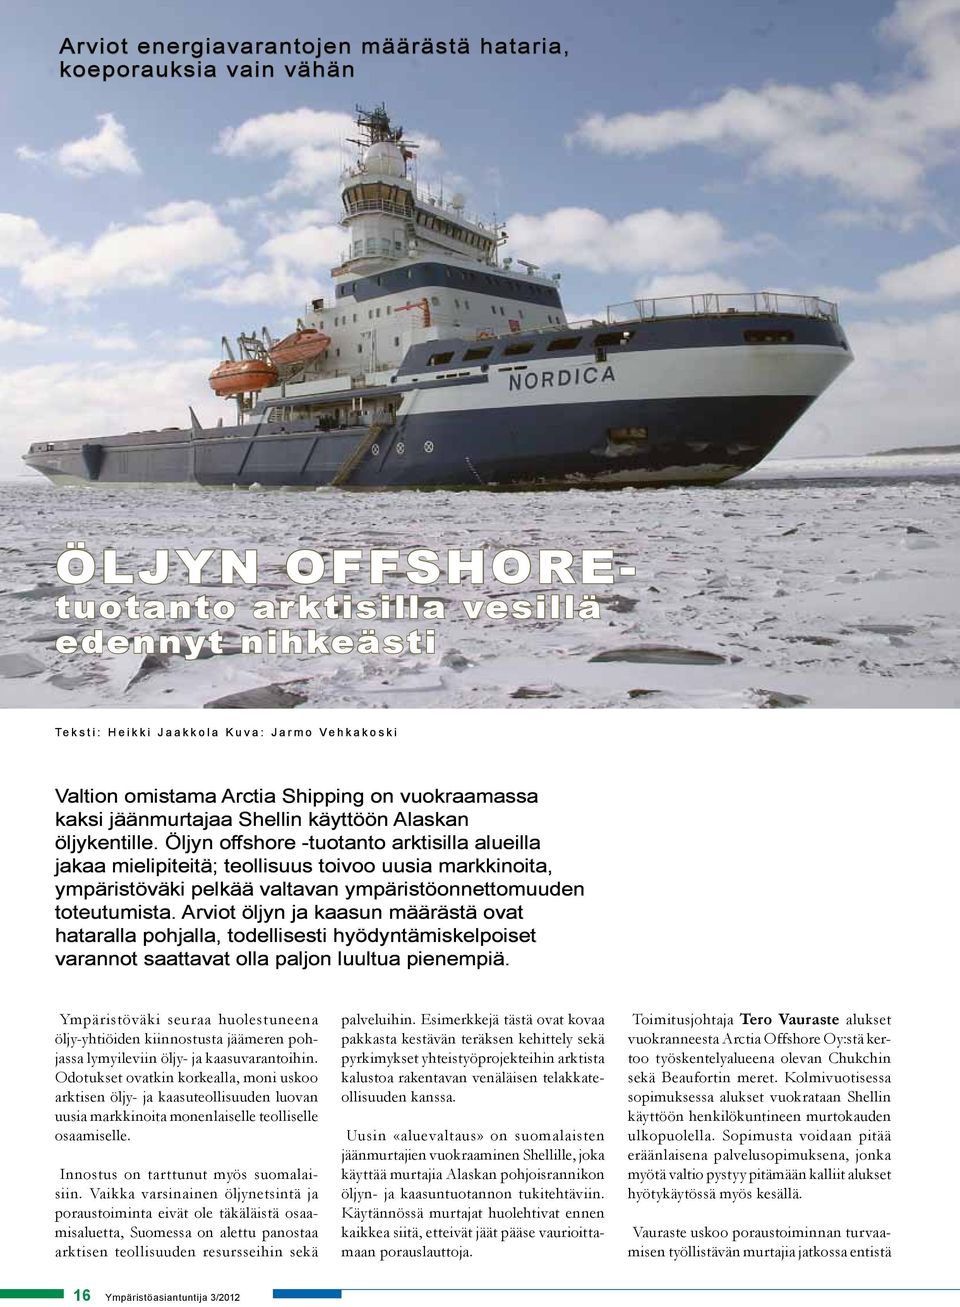 Öljyn offshore -tuotanto arktisilla alueilla jakaa mielipiteitä; teollisuus toivoo uusia markkinoita, ympäristöväki pelkää valtavan ympäristöonnettomuuden toteutumista.